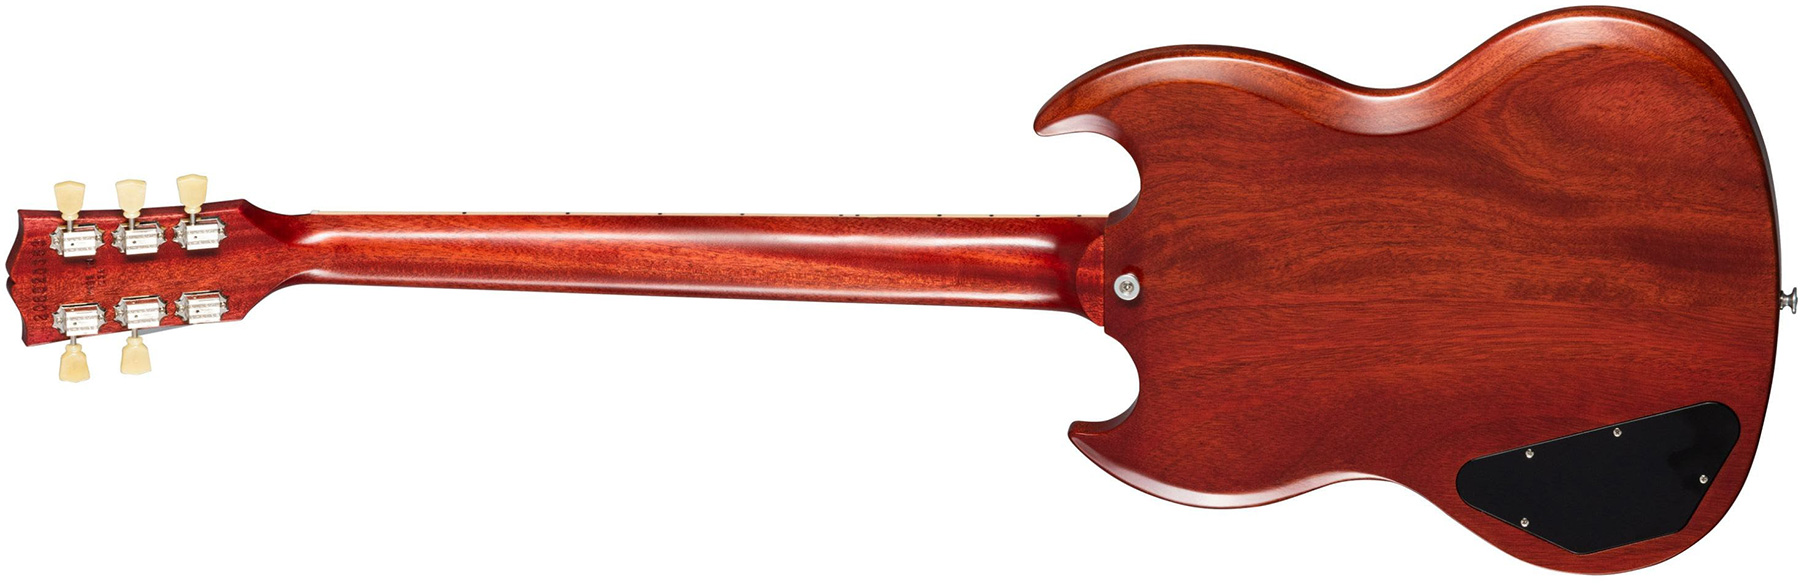 Gibson Sg Standard 1961 Faded Maestro Vibrola Original 2h Trem Rw - Vintage Cherry - Guitare Électrique Double Cut - Variation 1